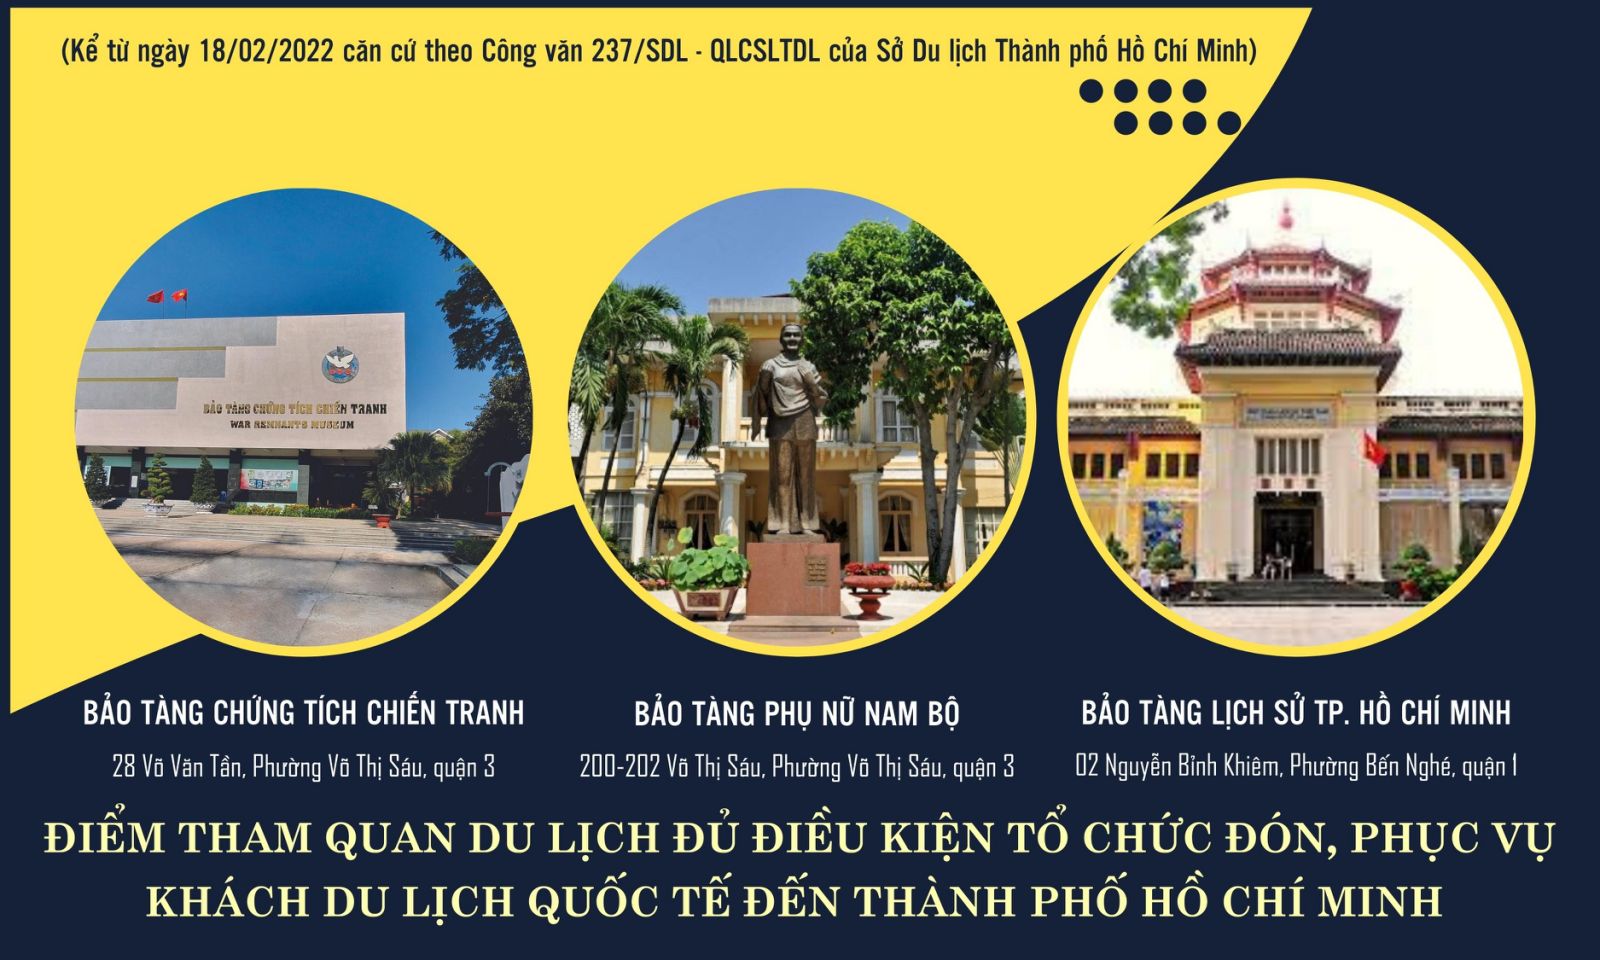 Thêm 3 điểm tham quan du lịch đủ điều kiện thí điểm tổ chức đón, phục vụ khách du lịch quốc tế đến Thành phố Hồ Chí Minh kể từ ngày 18/02/2022